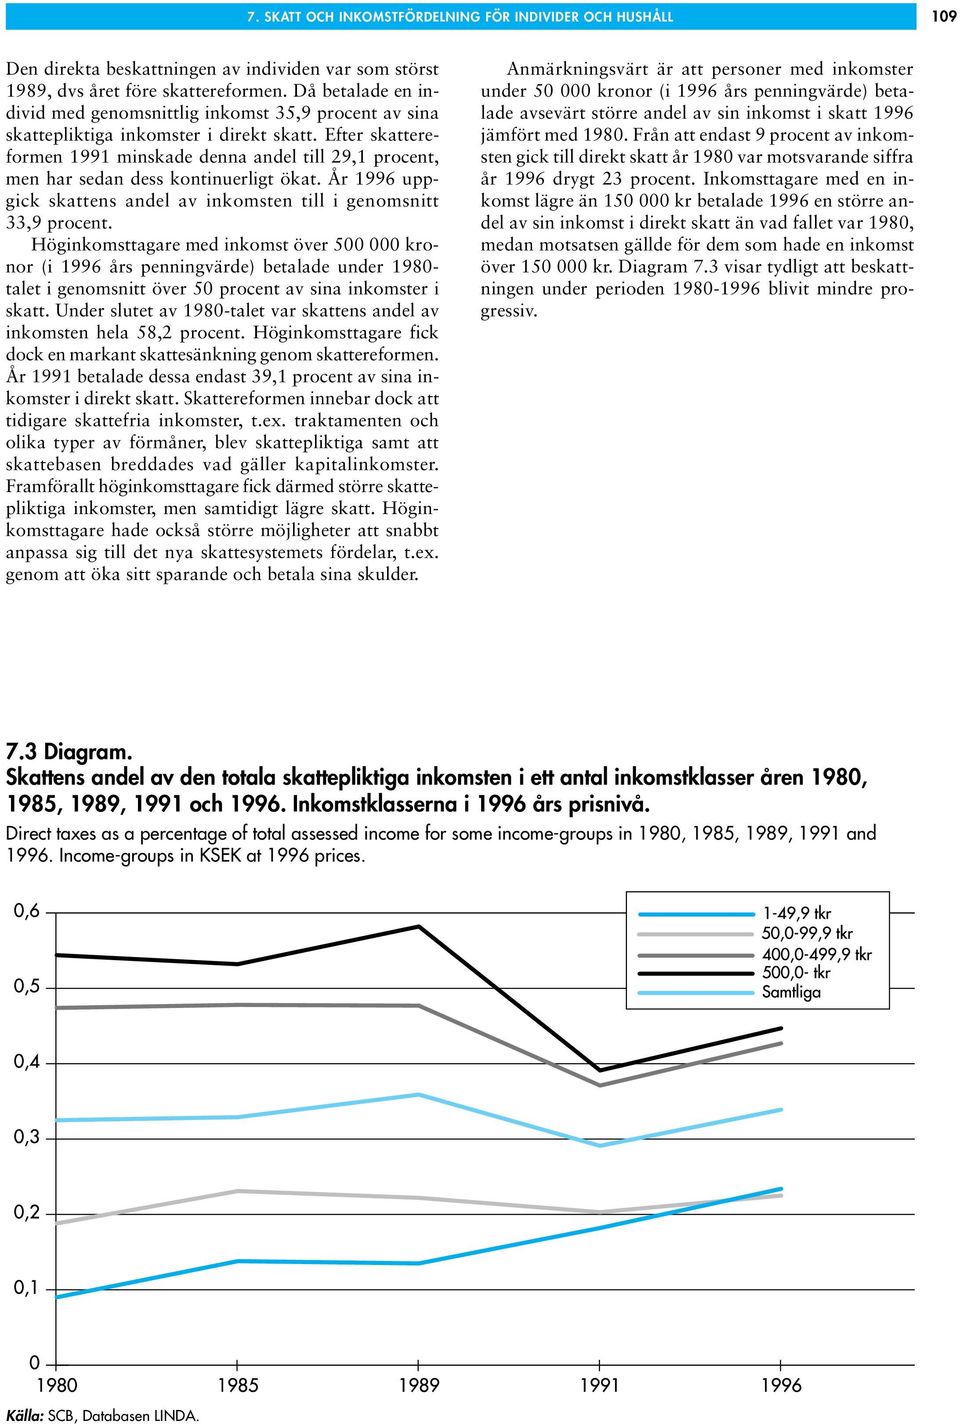 Efter skattereformen 1991 minskade denna andel till 29,1 procent, men har sedan dess kontinuerligt ökat. År 1996 uppgick skattens andel av inkomsten till i genomsnitt 33,9 procent.